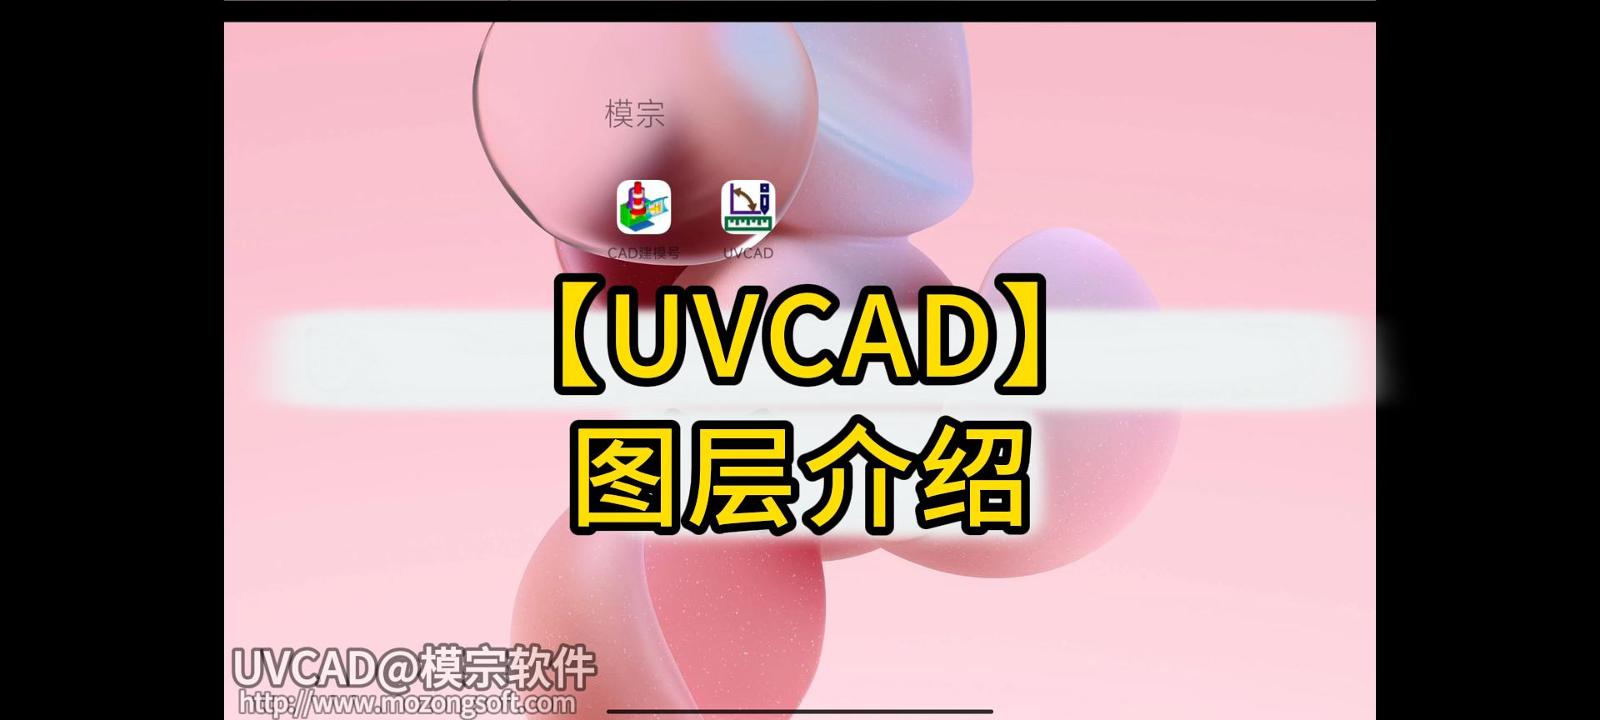 【UVCAD】- 图层的使用教程_图层